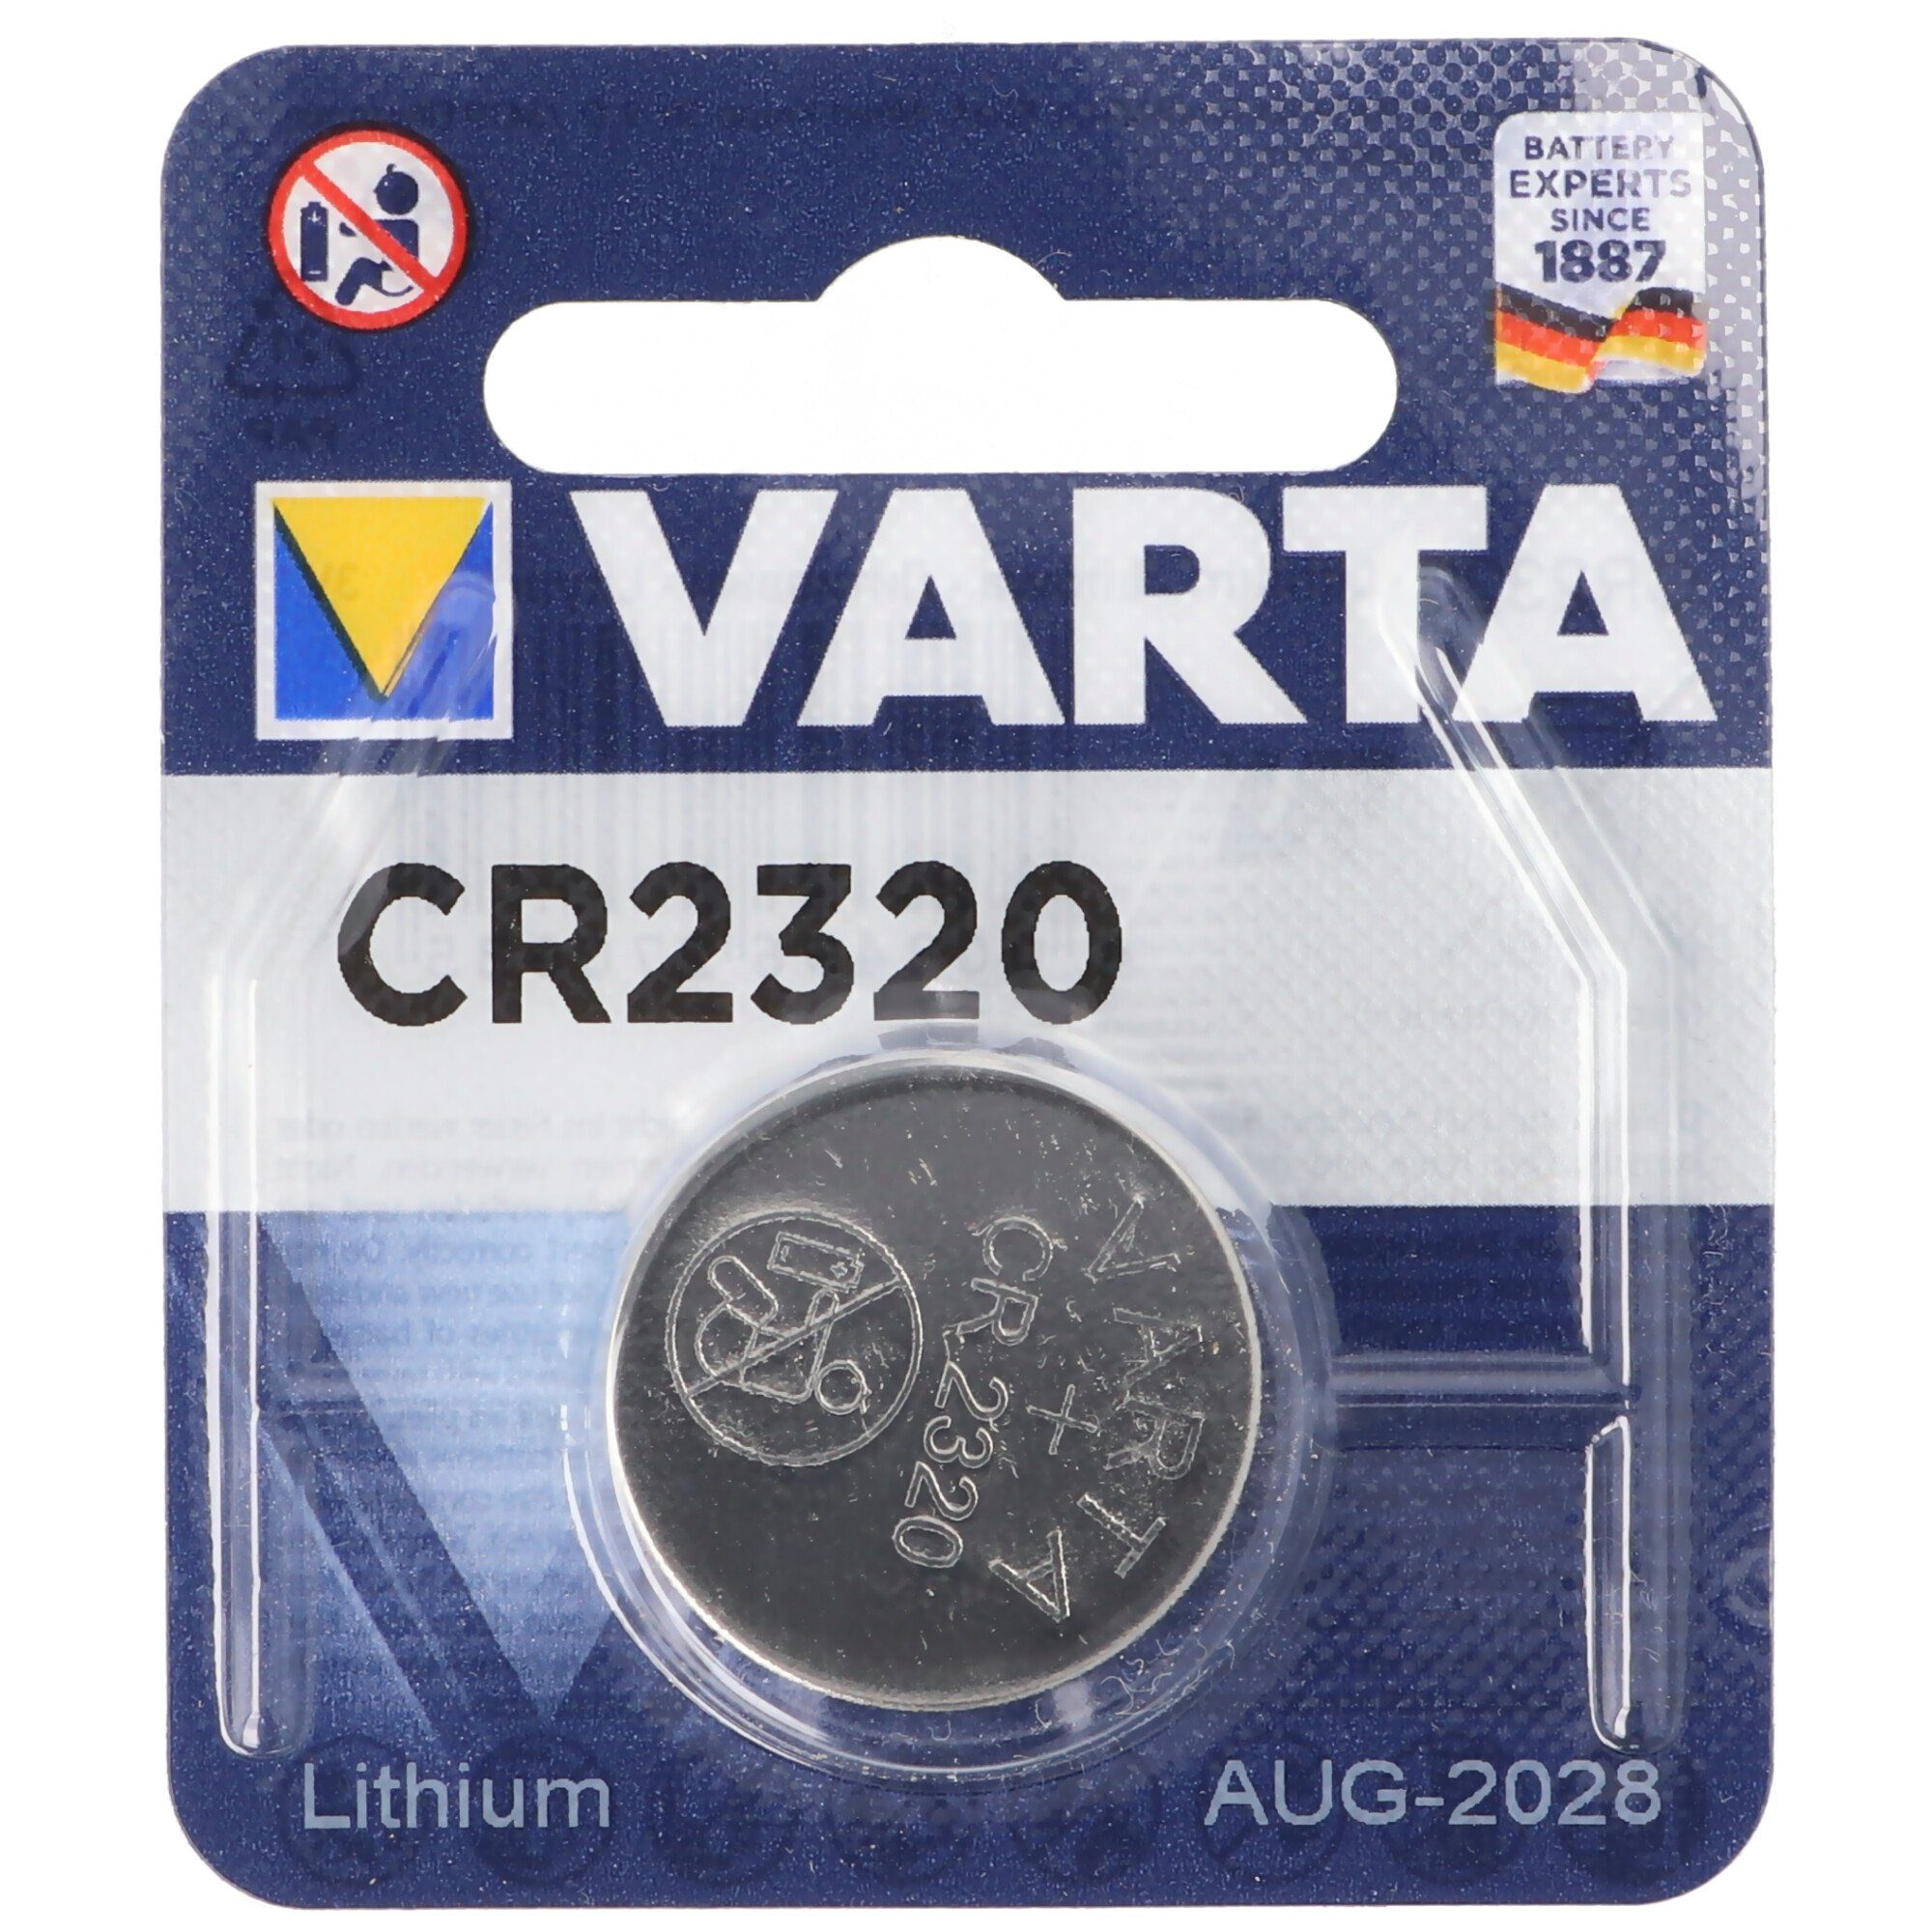 (3,0 Batterie VARTA V) Lithium Batterie, Varta CR2320